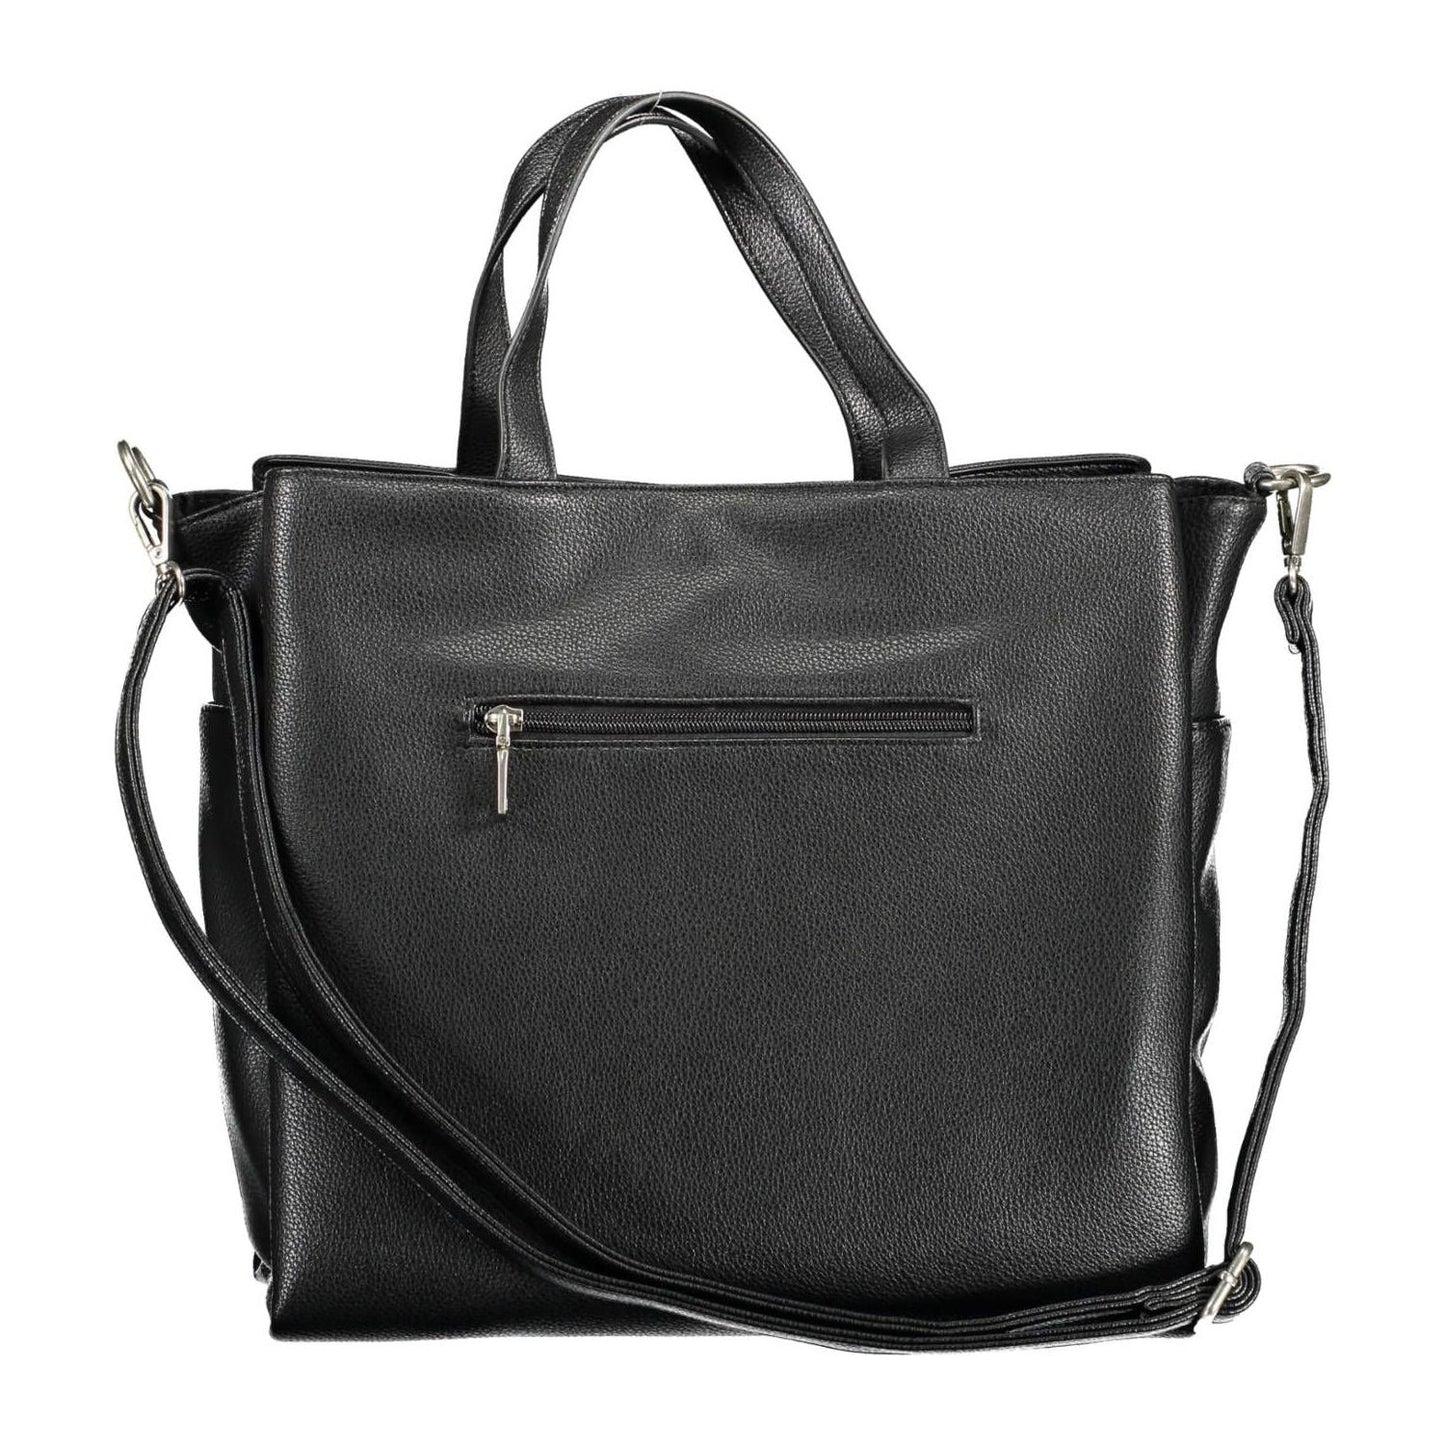 BYBLOS Chic Black Multi-Pocket Handbag chic-black-multi-pocket-handbag